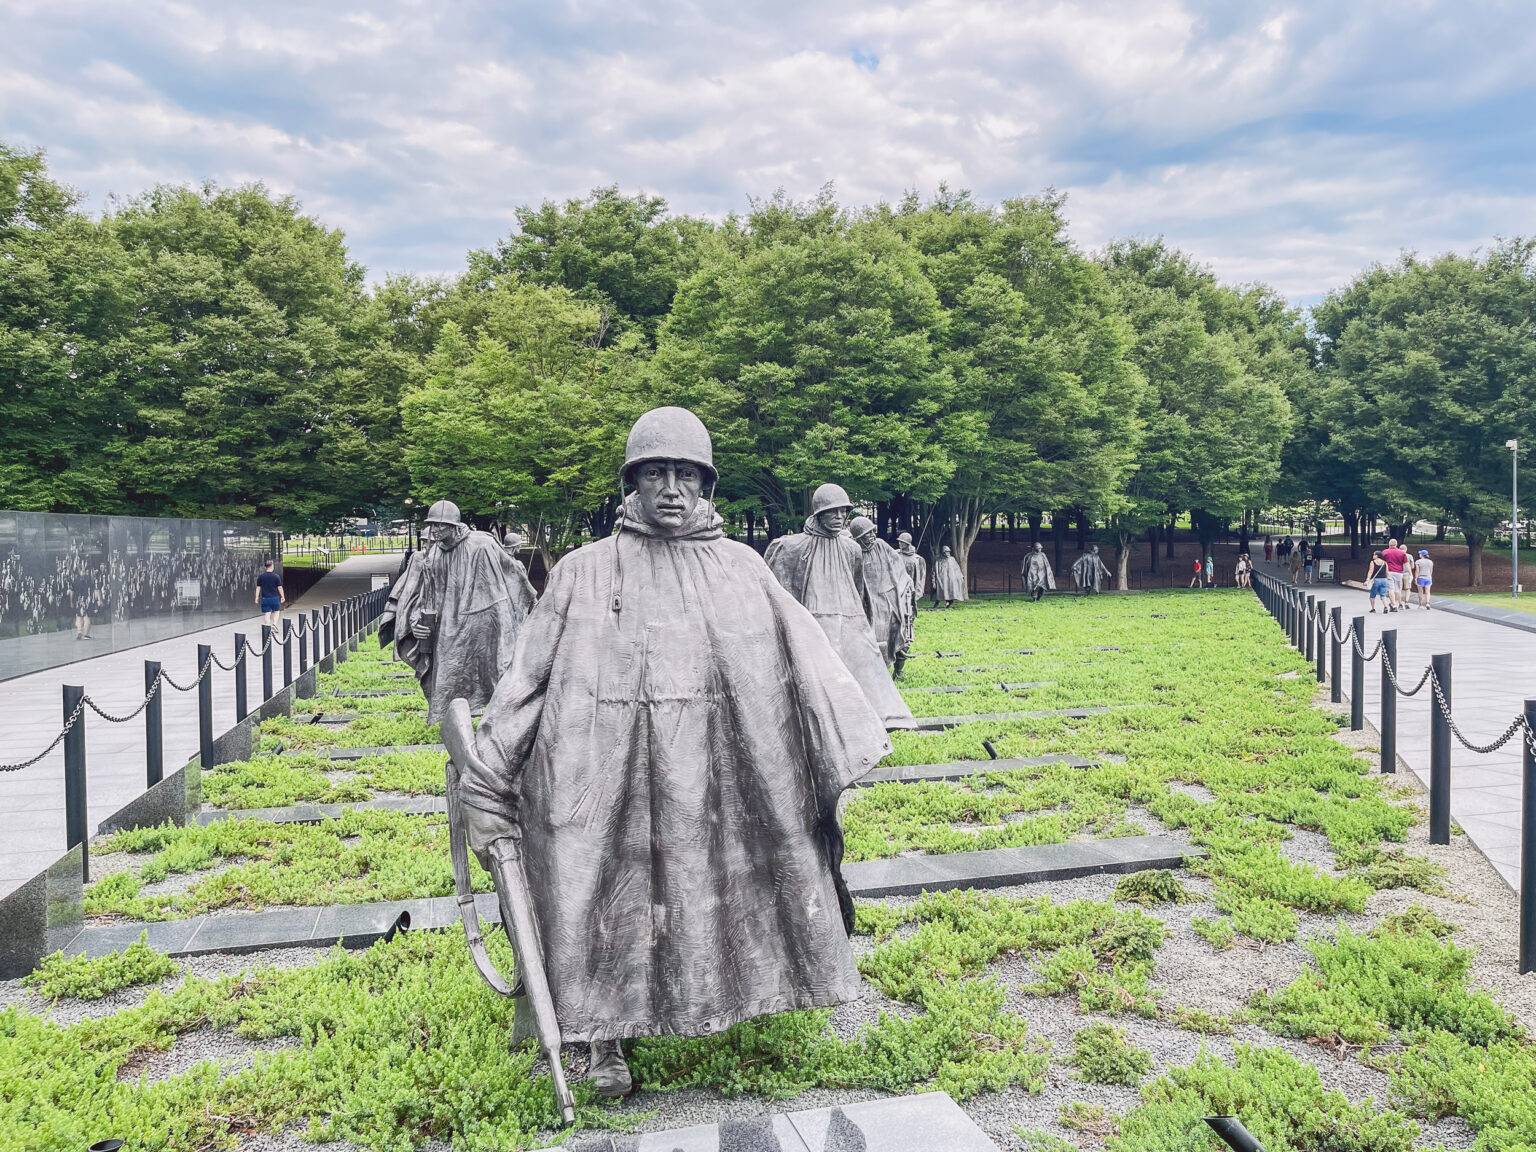 Die Memorials führen euch durch D.C.’s Geschichte - dieses erinnert an die Opfer des Koreakrieges.